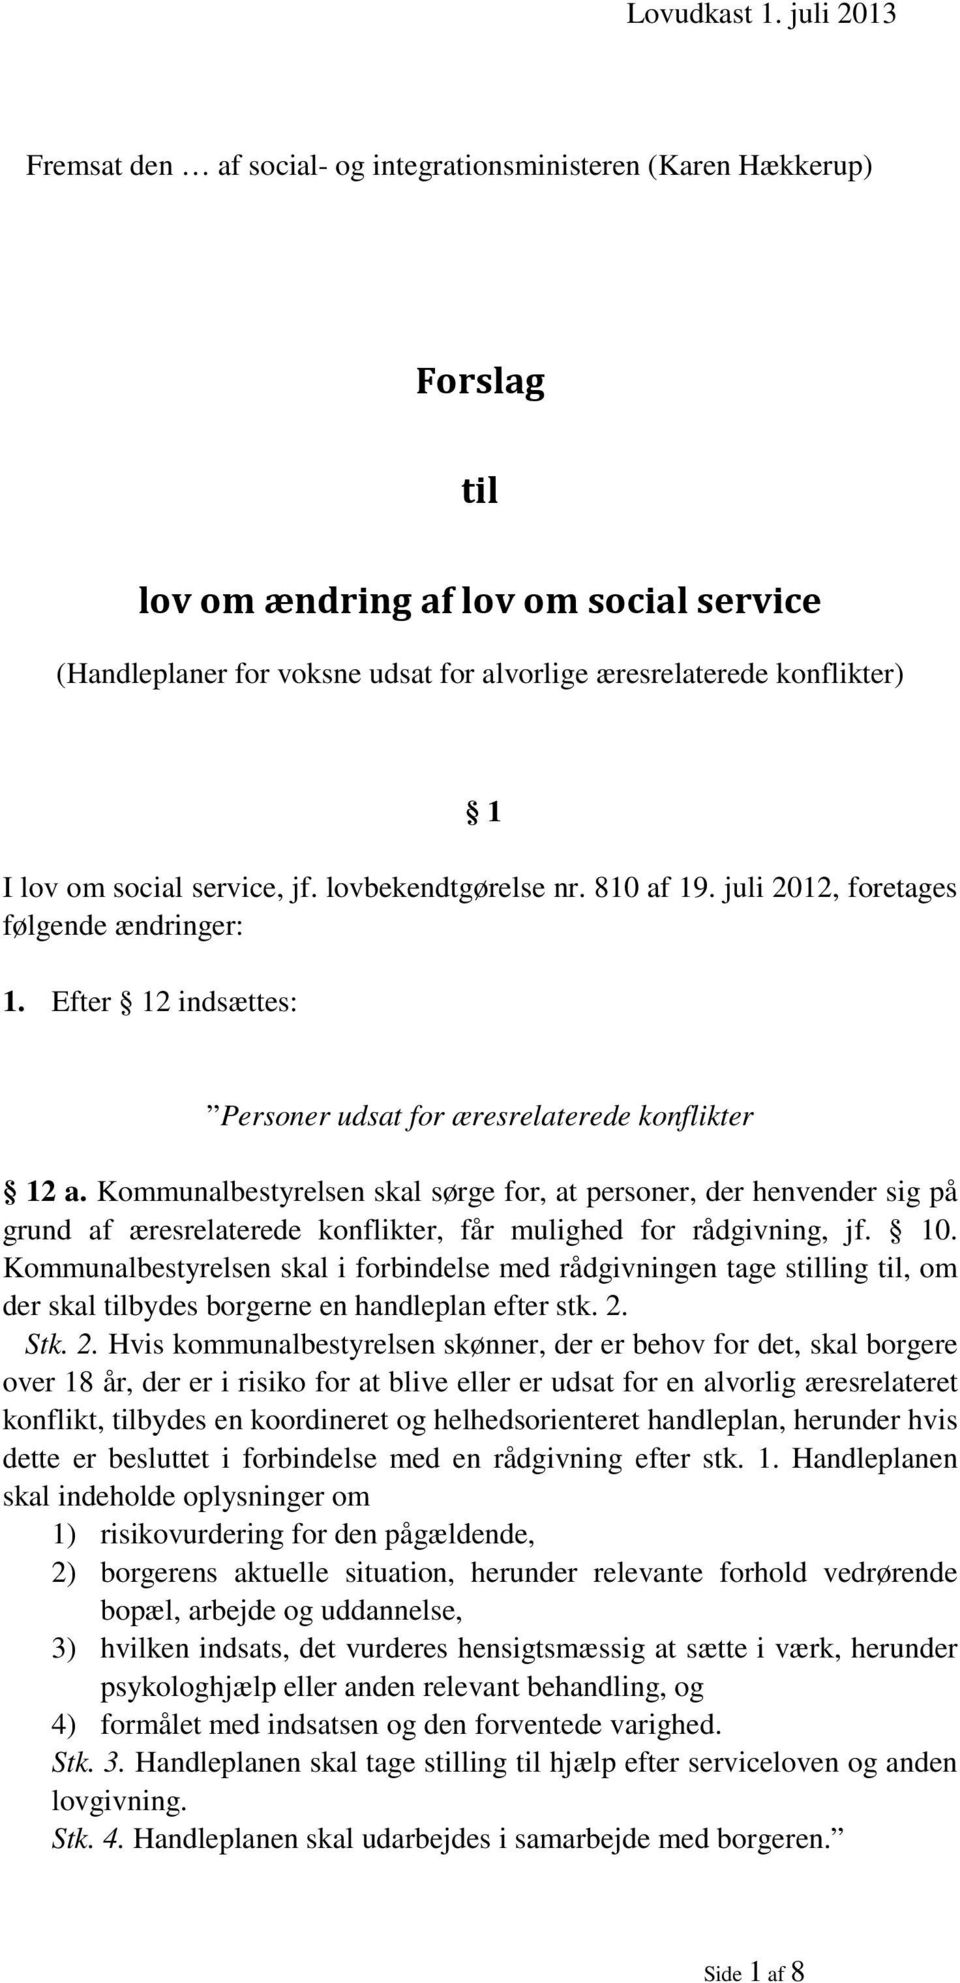 1 I lov om social service, jf. lovbekendtgørelse nr. 810 af 19. juli 2012, foretages følgende ændringer: 1. Efter 12 indsættes: Personer udsat for æresrelaterede konflikter 12 a.